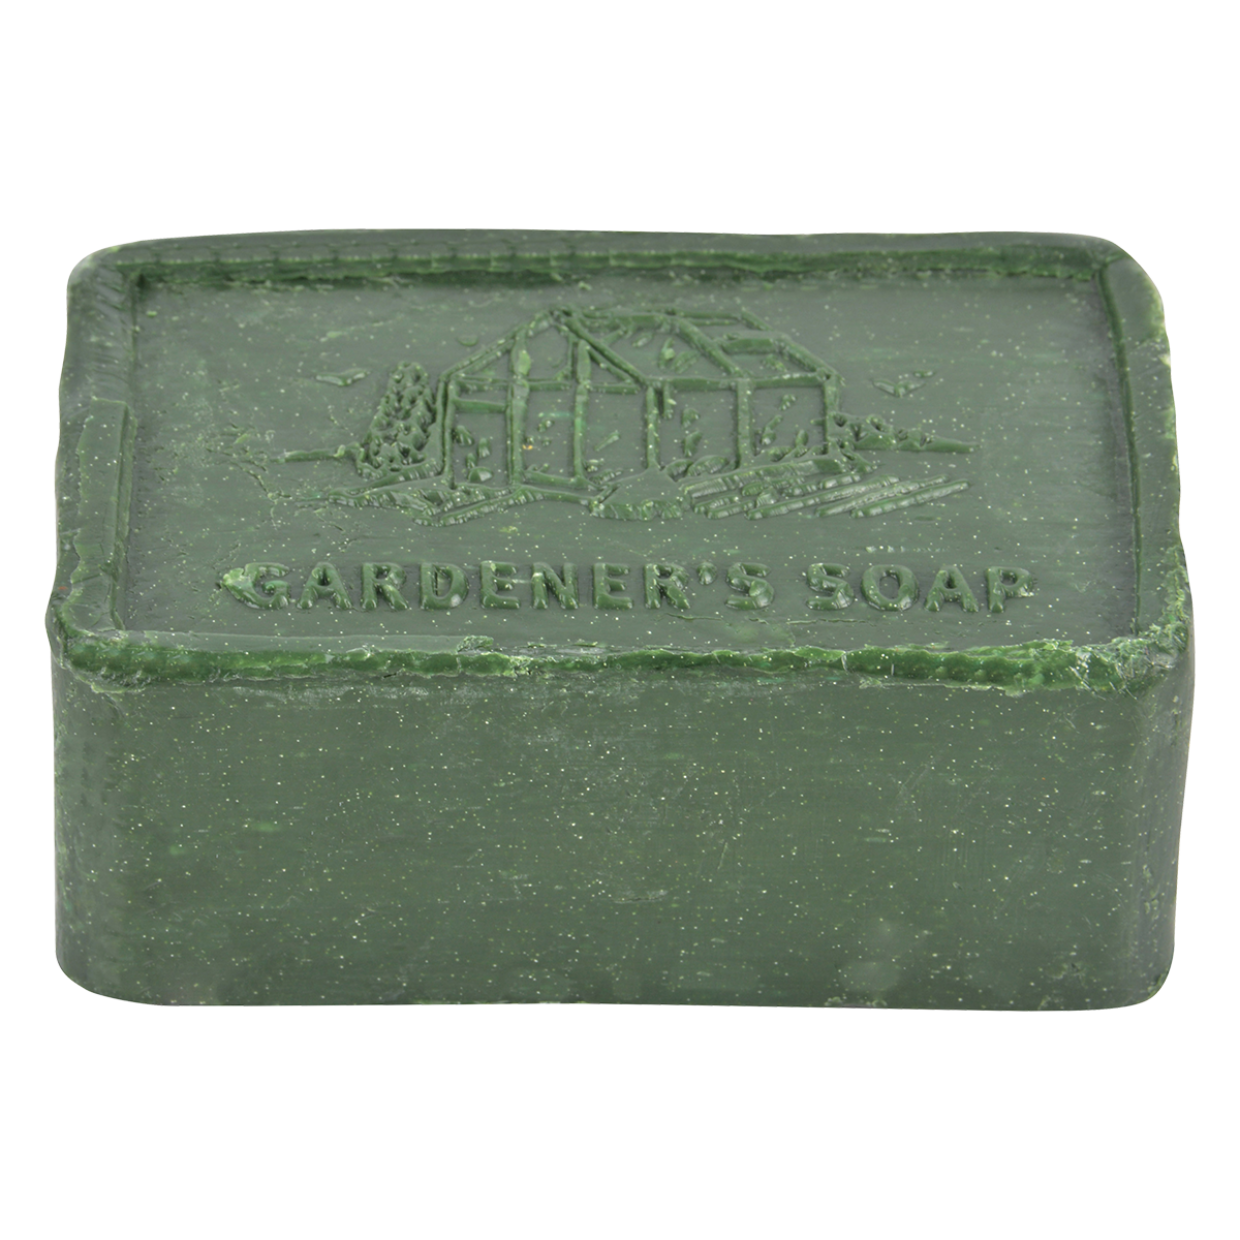 Gardeners Soap